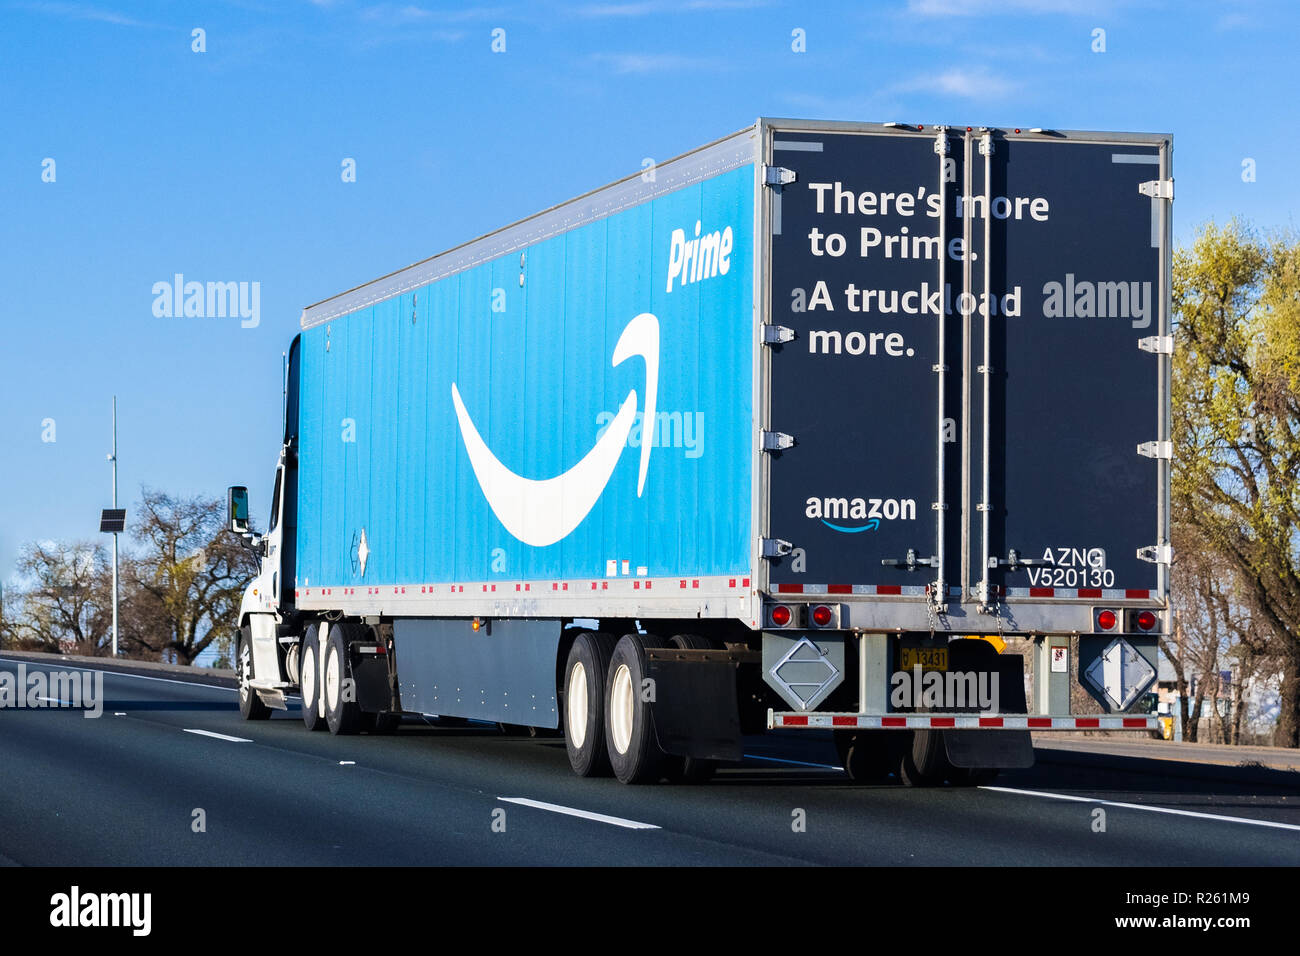 22 mars 2018 Stockton / CA / USA - Amazon la conduite de camions sur l'autoroute, le premier grand logo imprimé sur le côté Banque D'Images